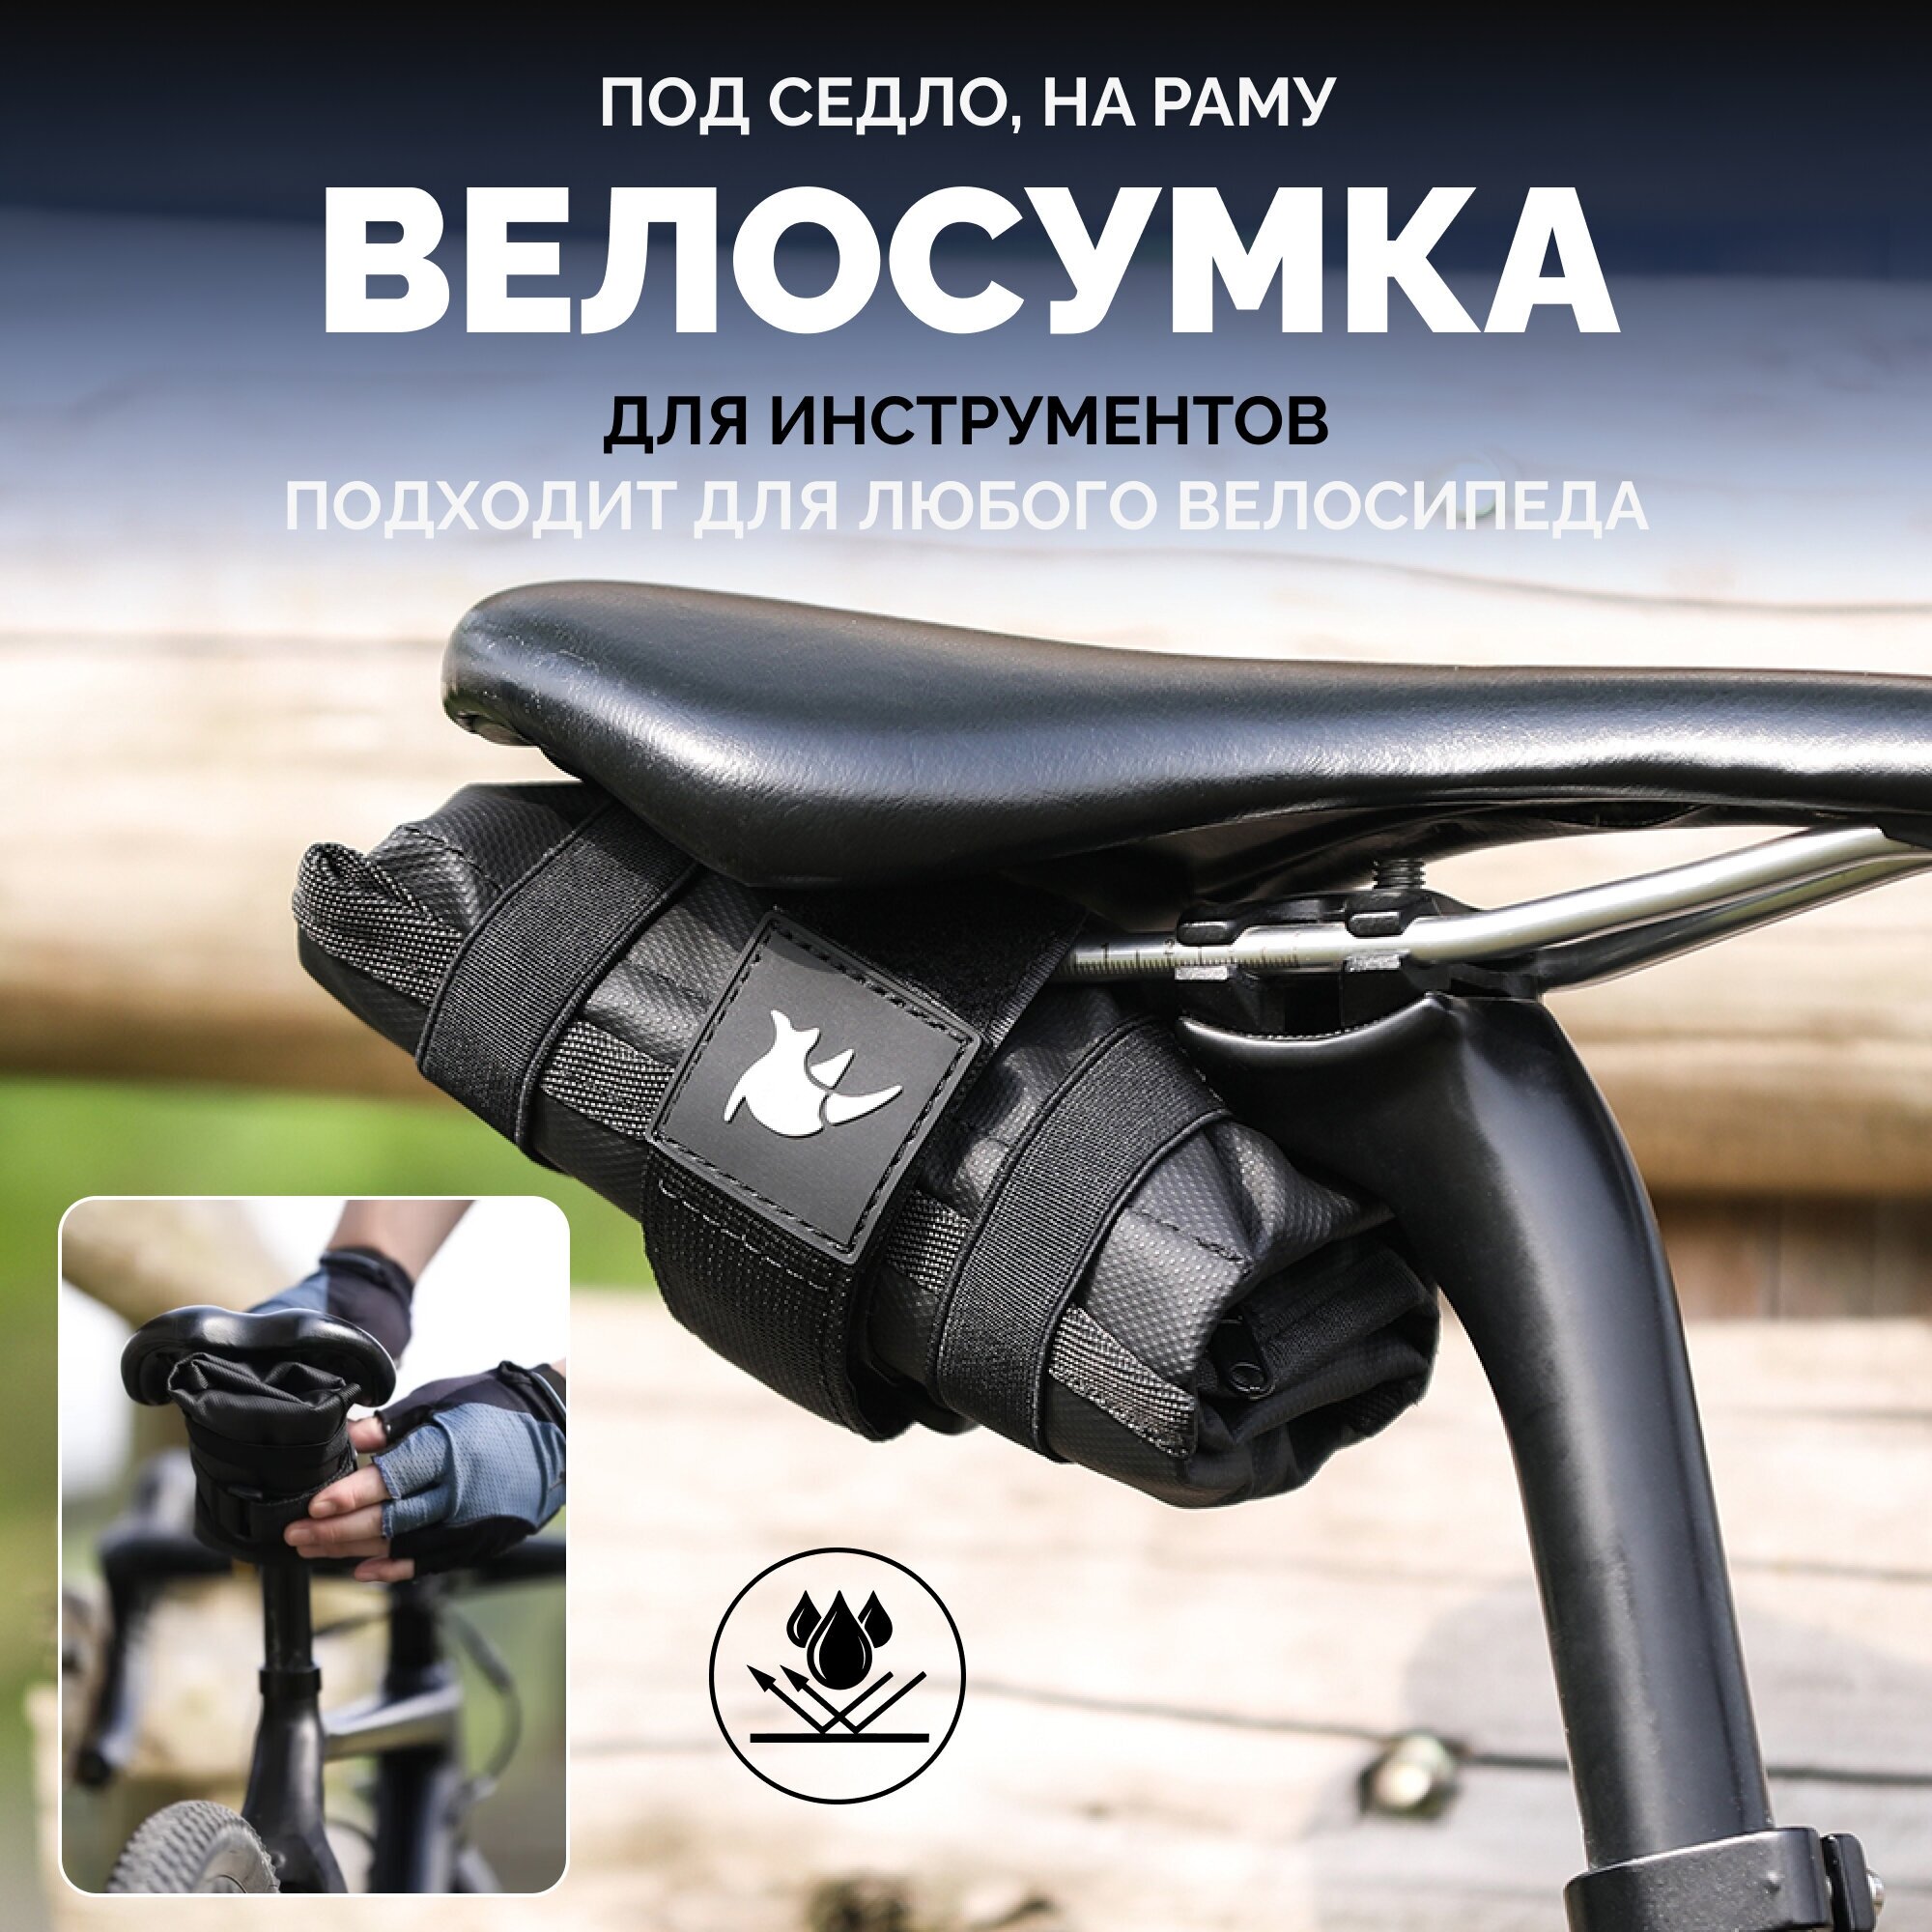 Сумка для велосипеда Rhinowalk RK5100BK подседельная или на раму